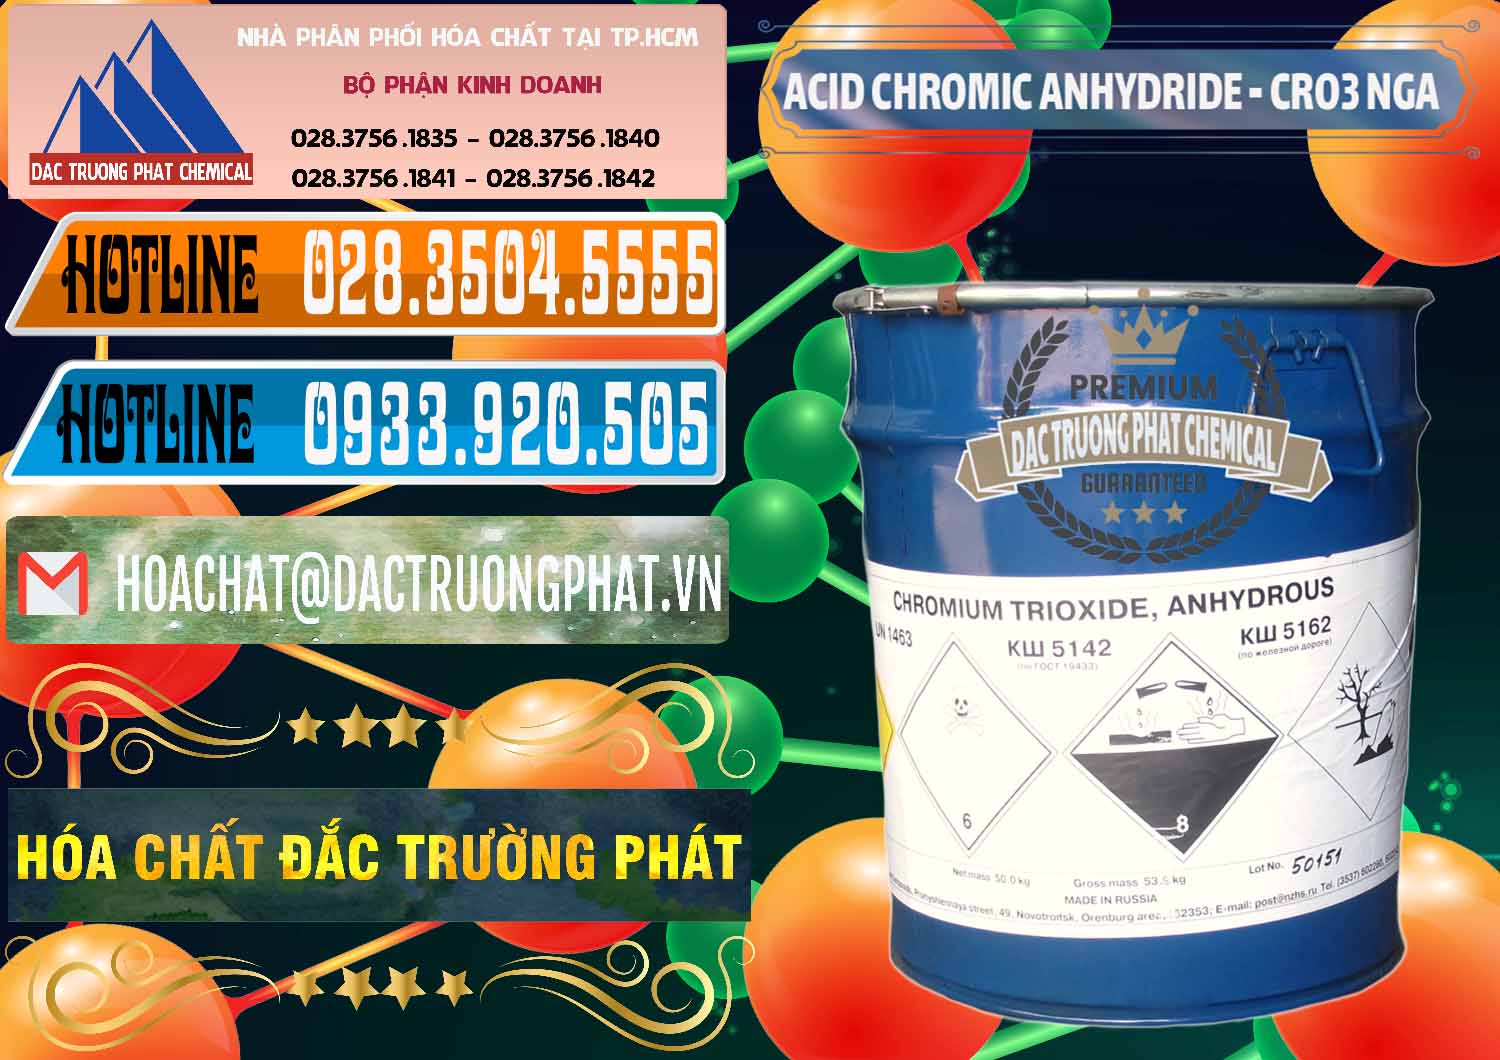 Nhà phân phối ( bán ) Acid Chromic Anhydride - Cromic CRO3 Nga Russia - 0006 - Cty bán - cung cấp hóa chất tại TP.HCM - stmp.net